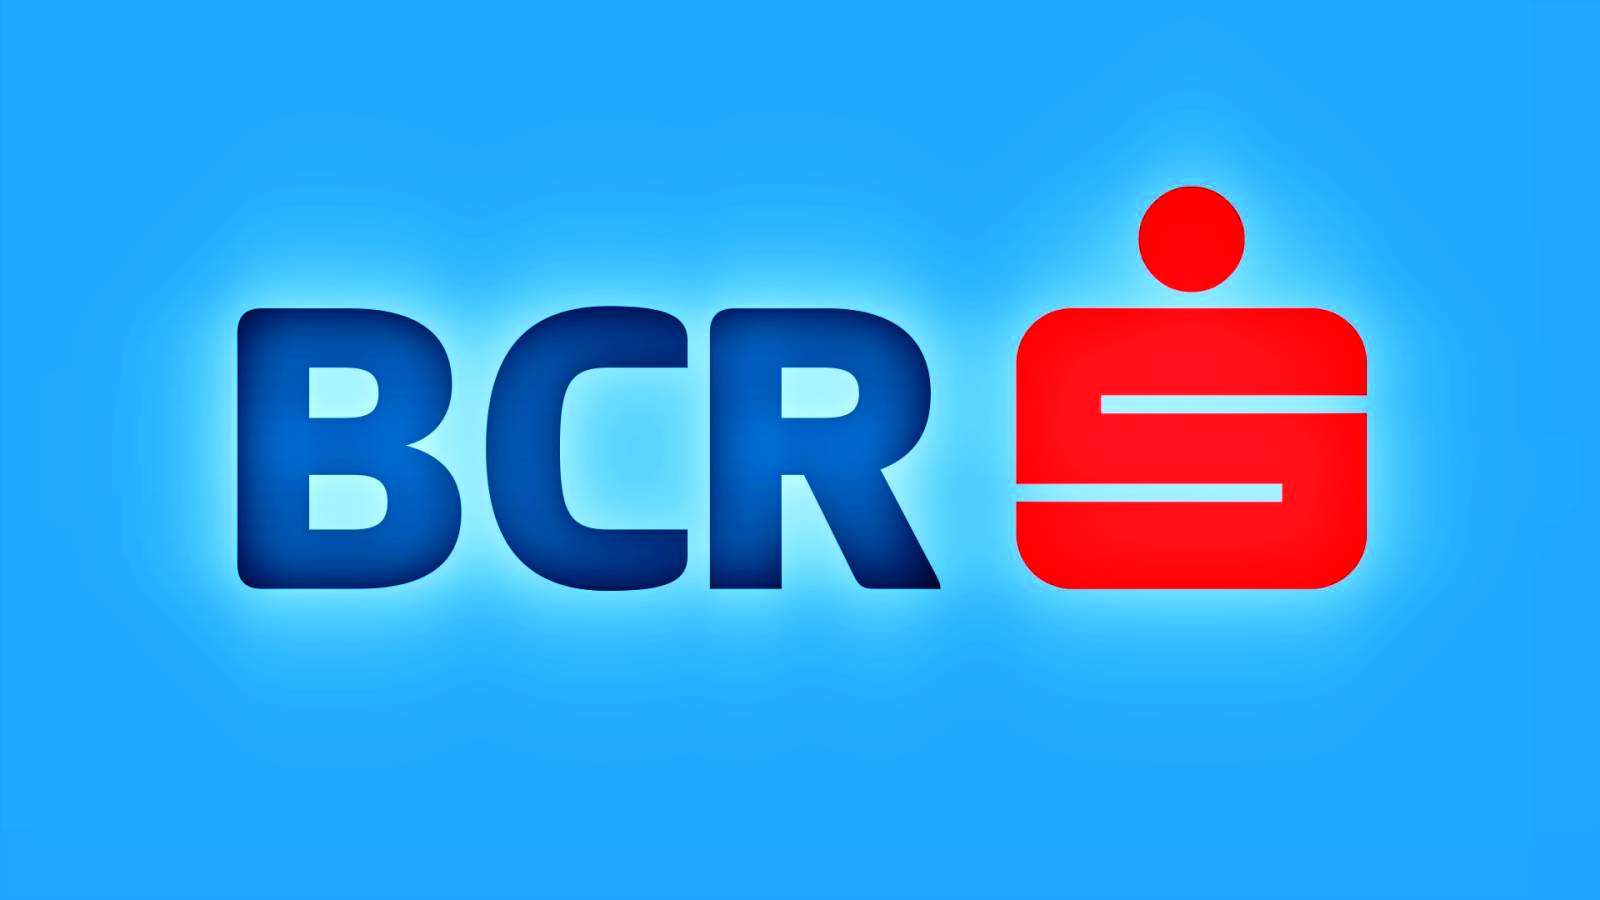 BCR Rumänien varning DNSC angående ny cyberattack